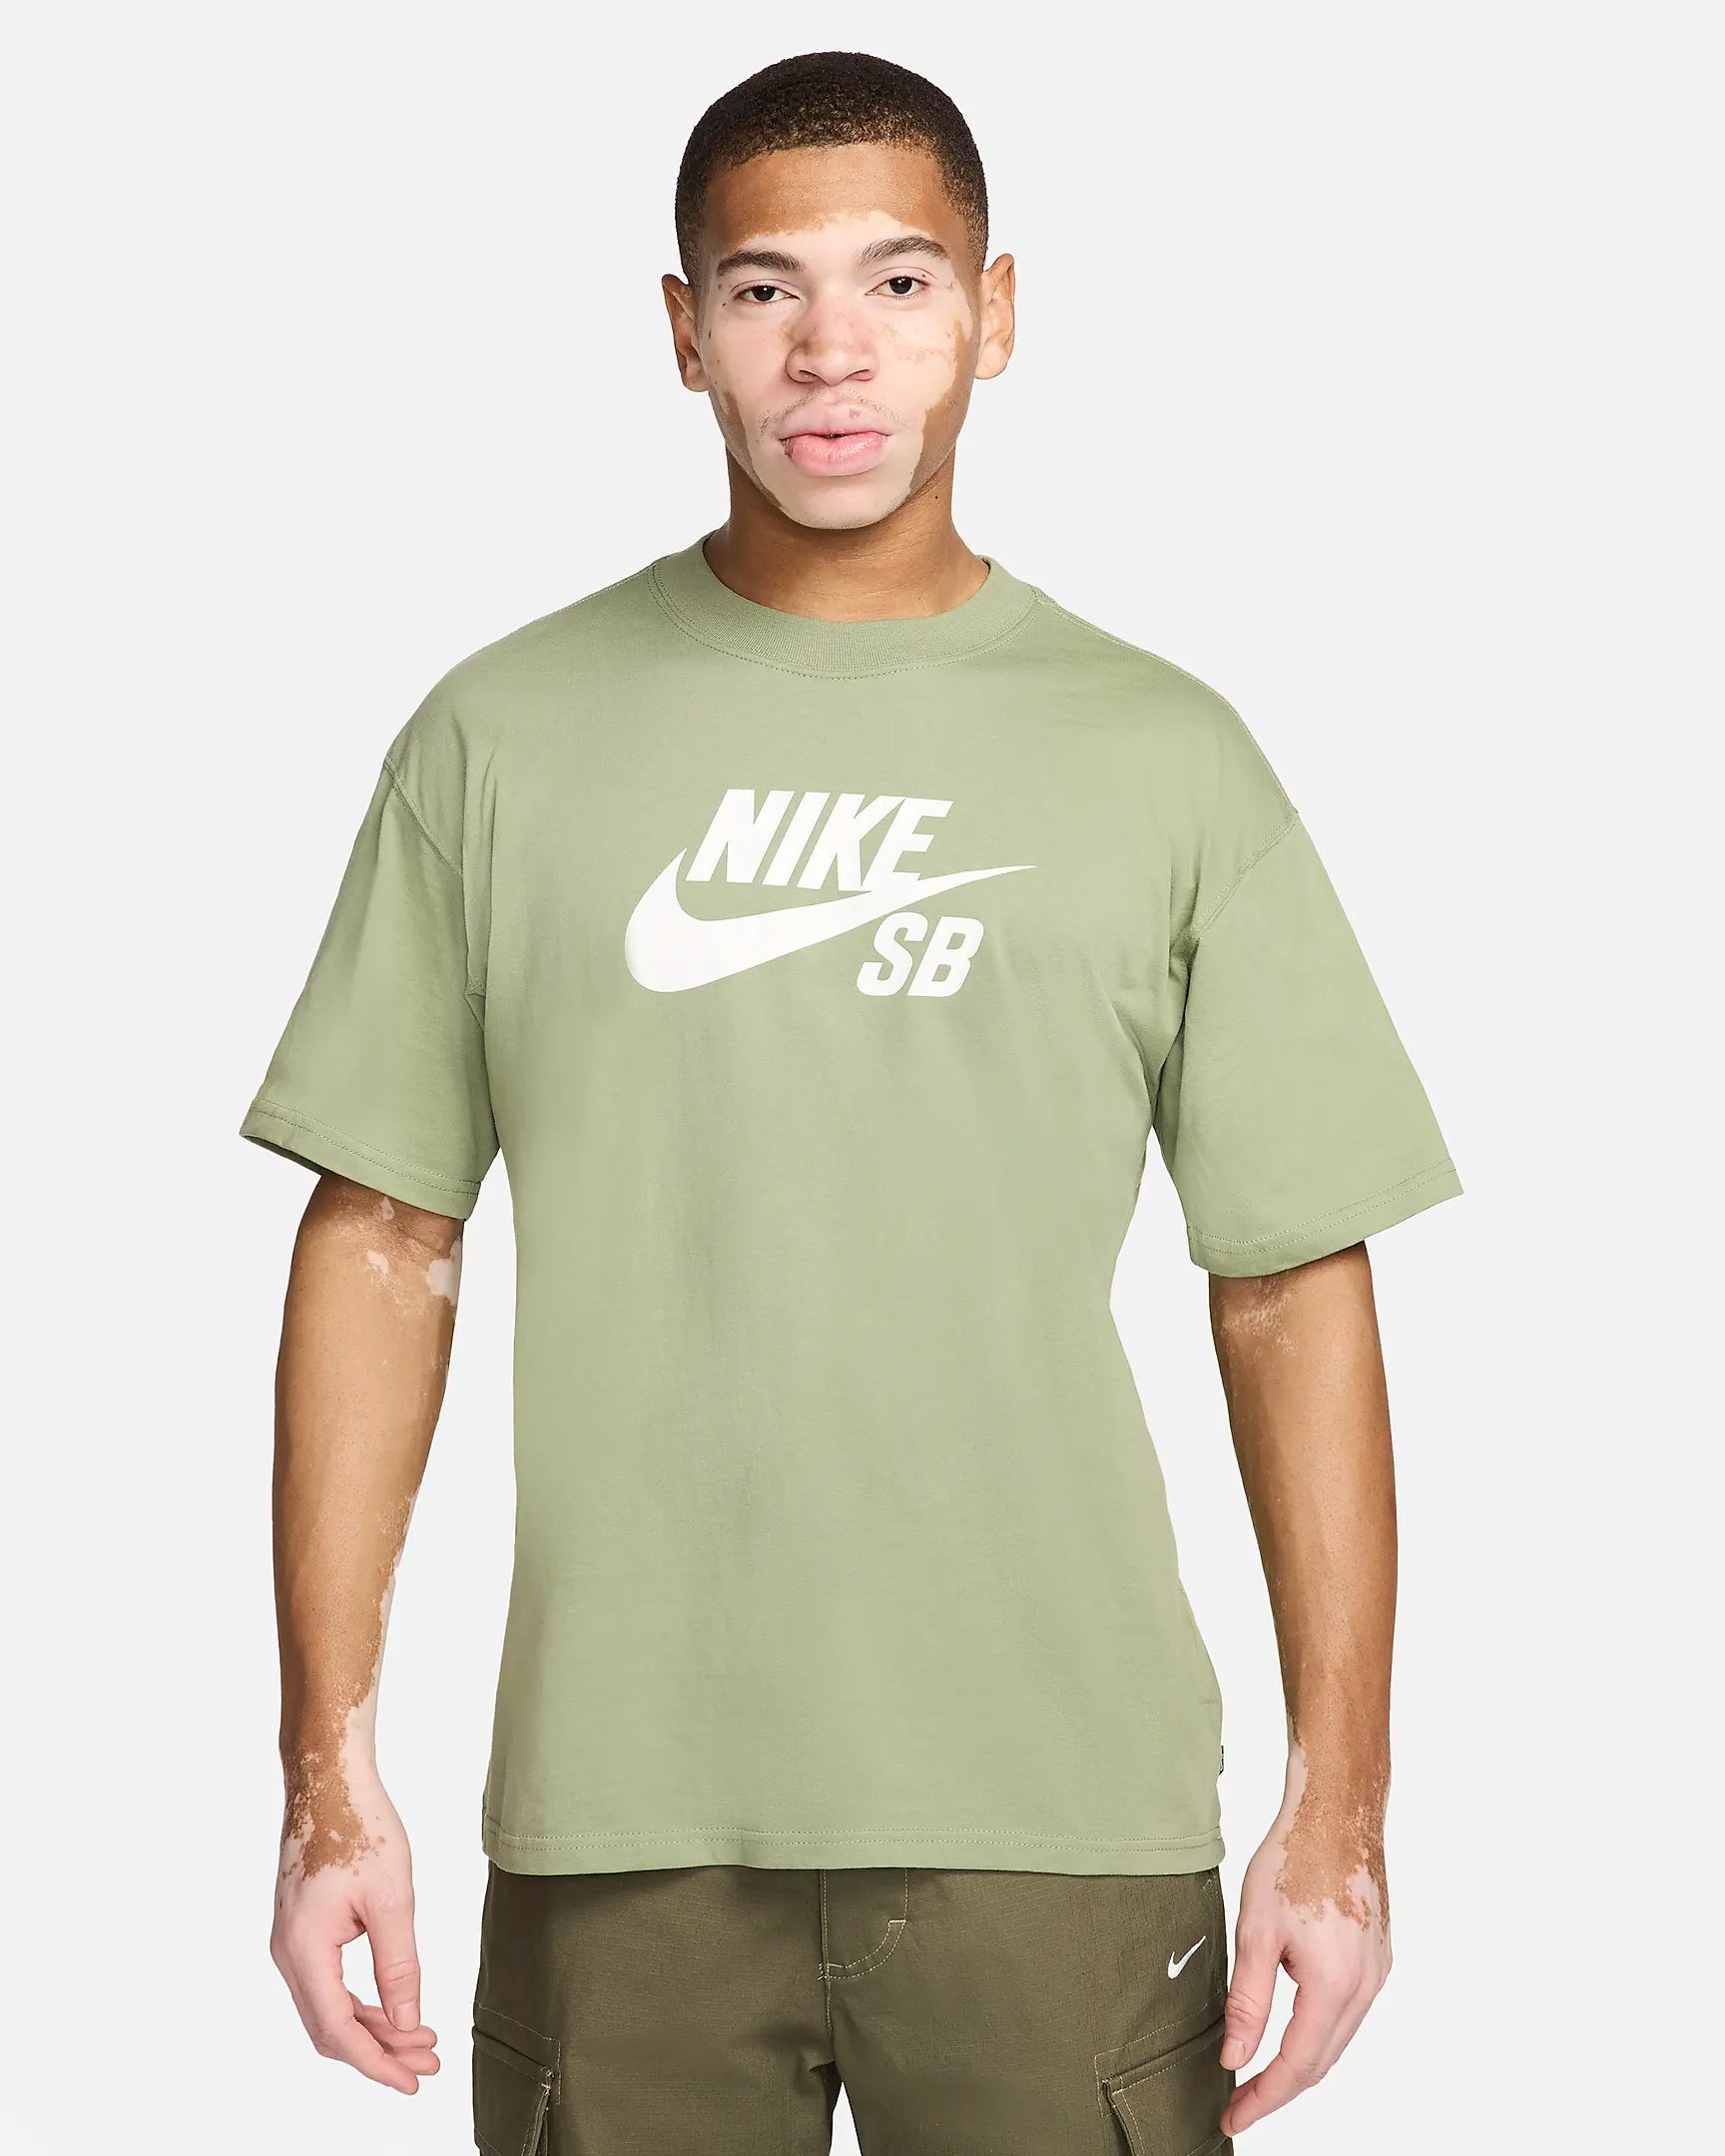 Nike SB Logo Tee - Oil Green